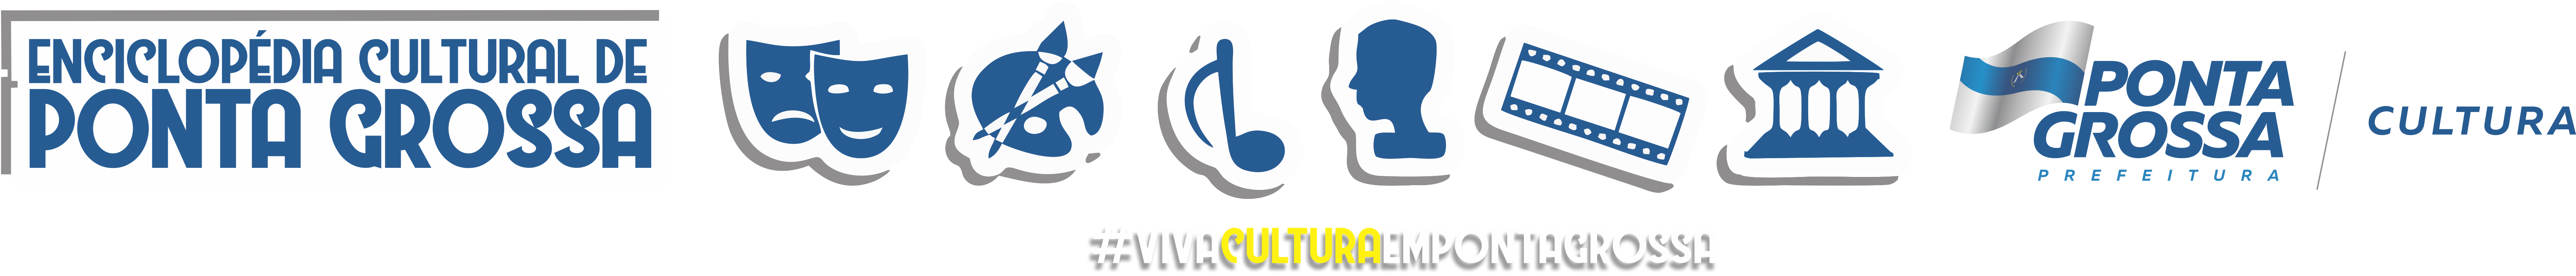 Enciclopédia Cultural de Ponta Grossa